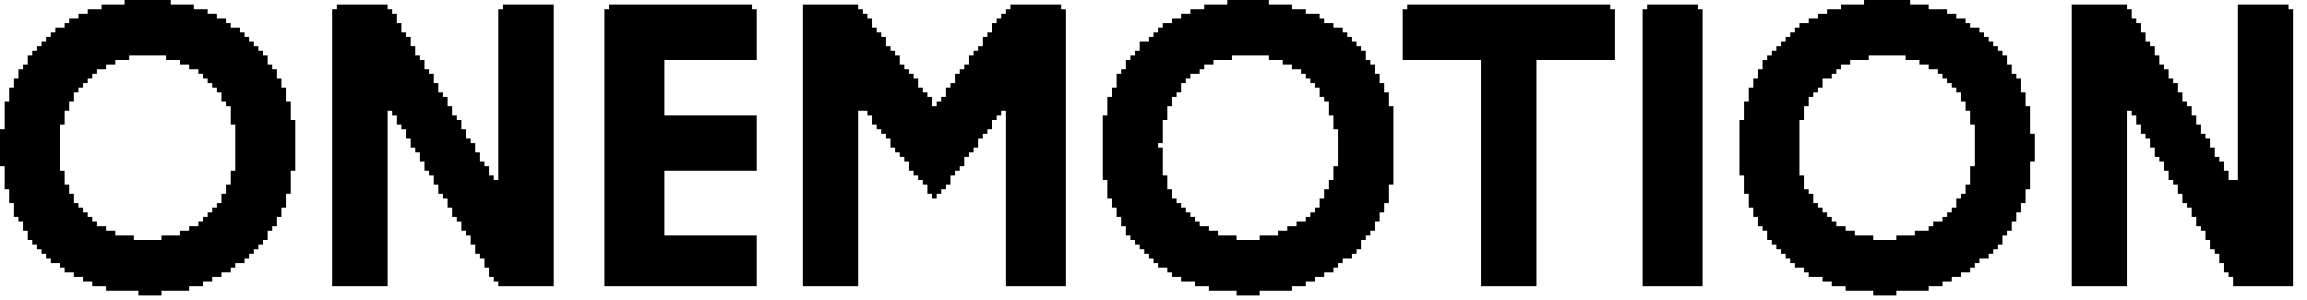 Onemotion_logo